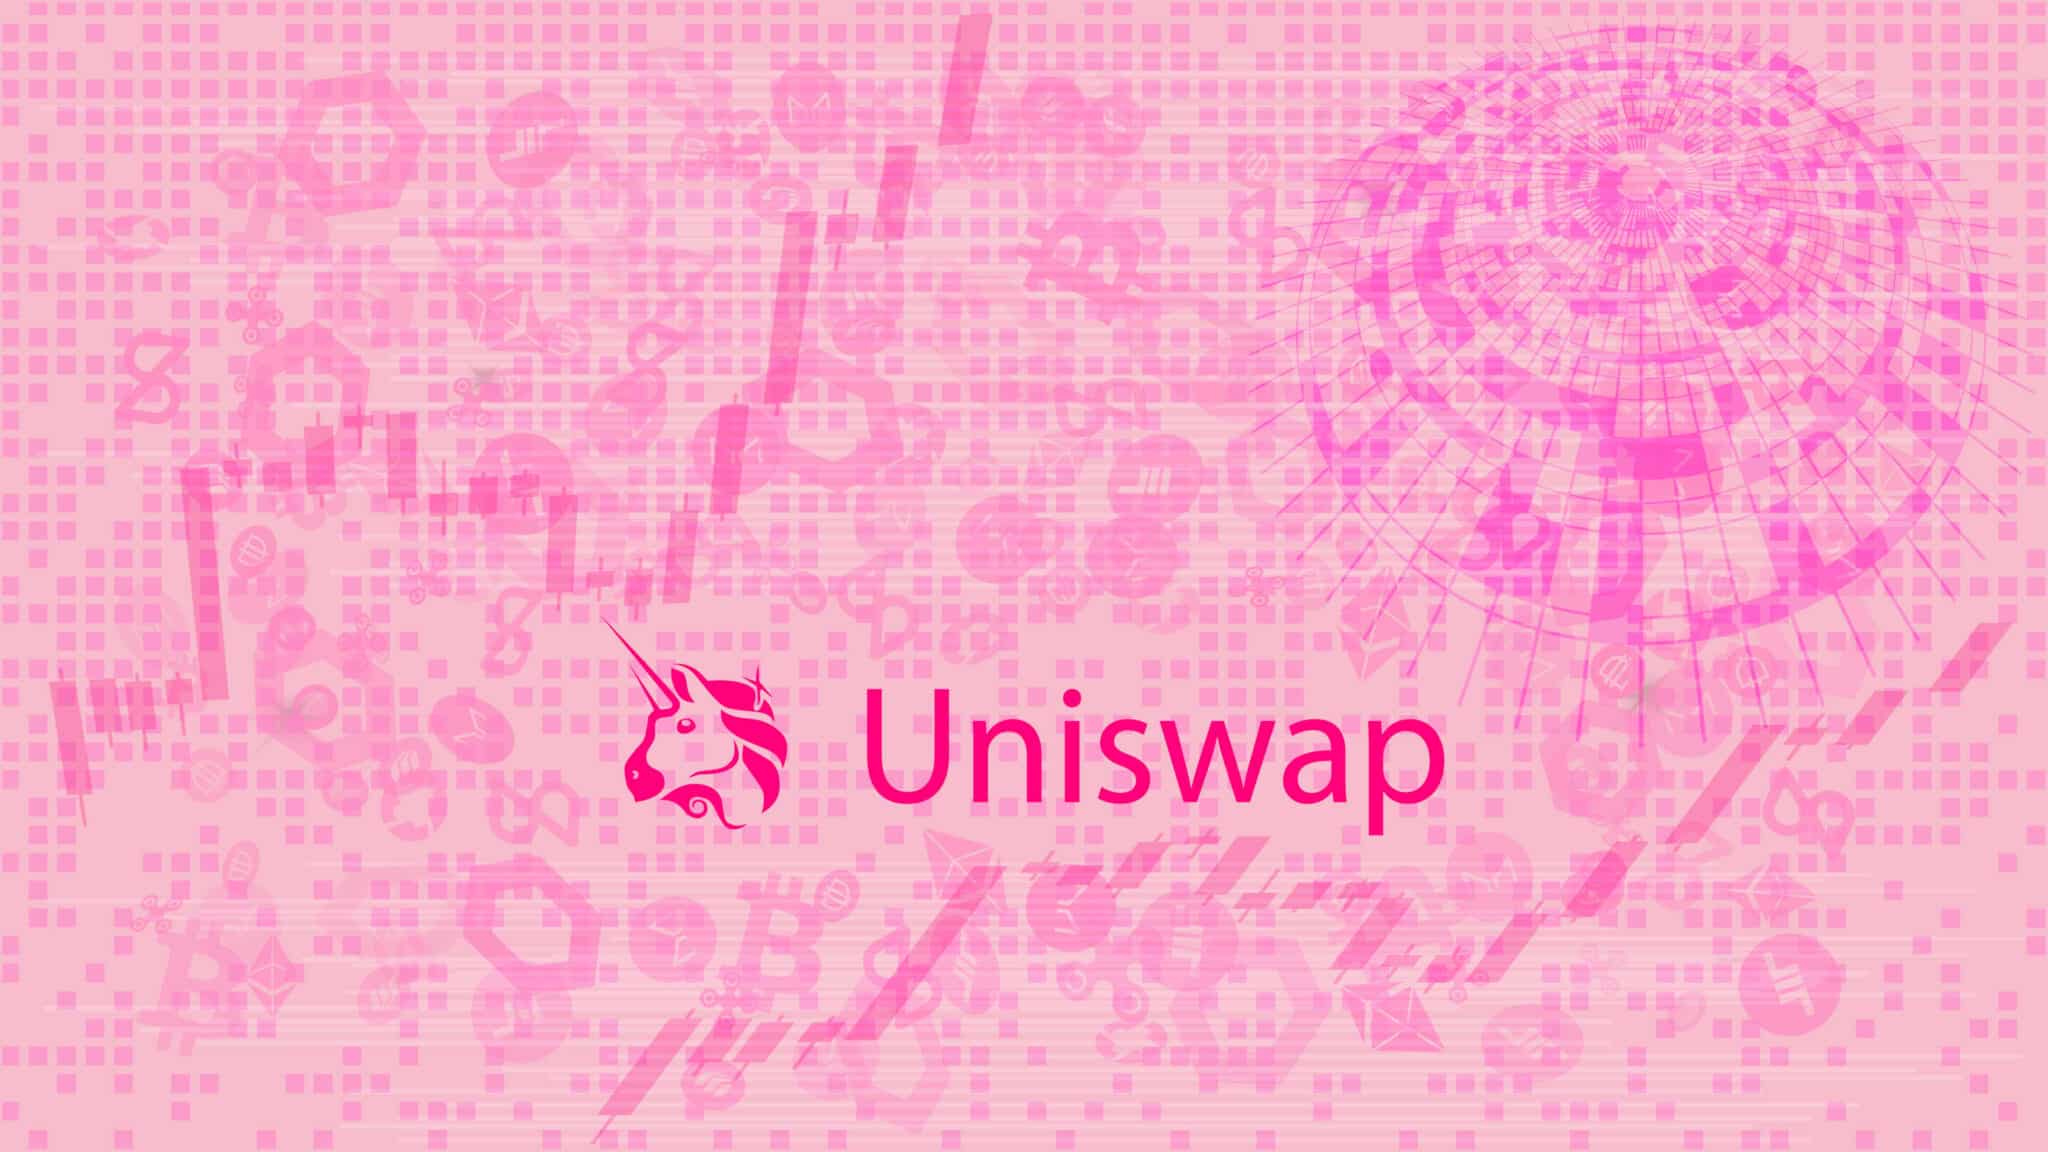 Uniswap (UNI) logo on pink background.